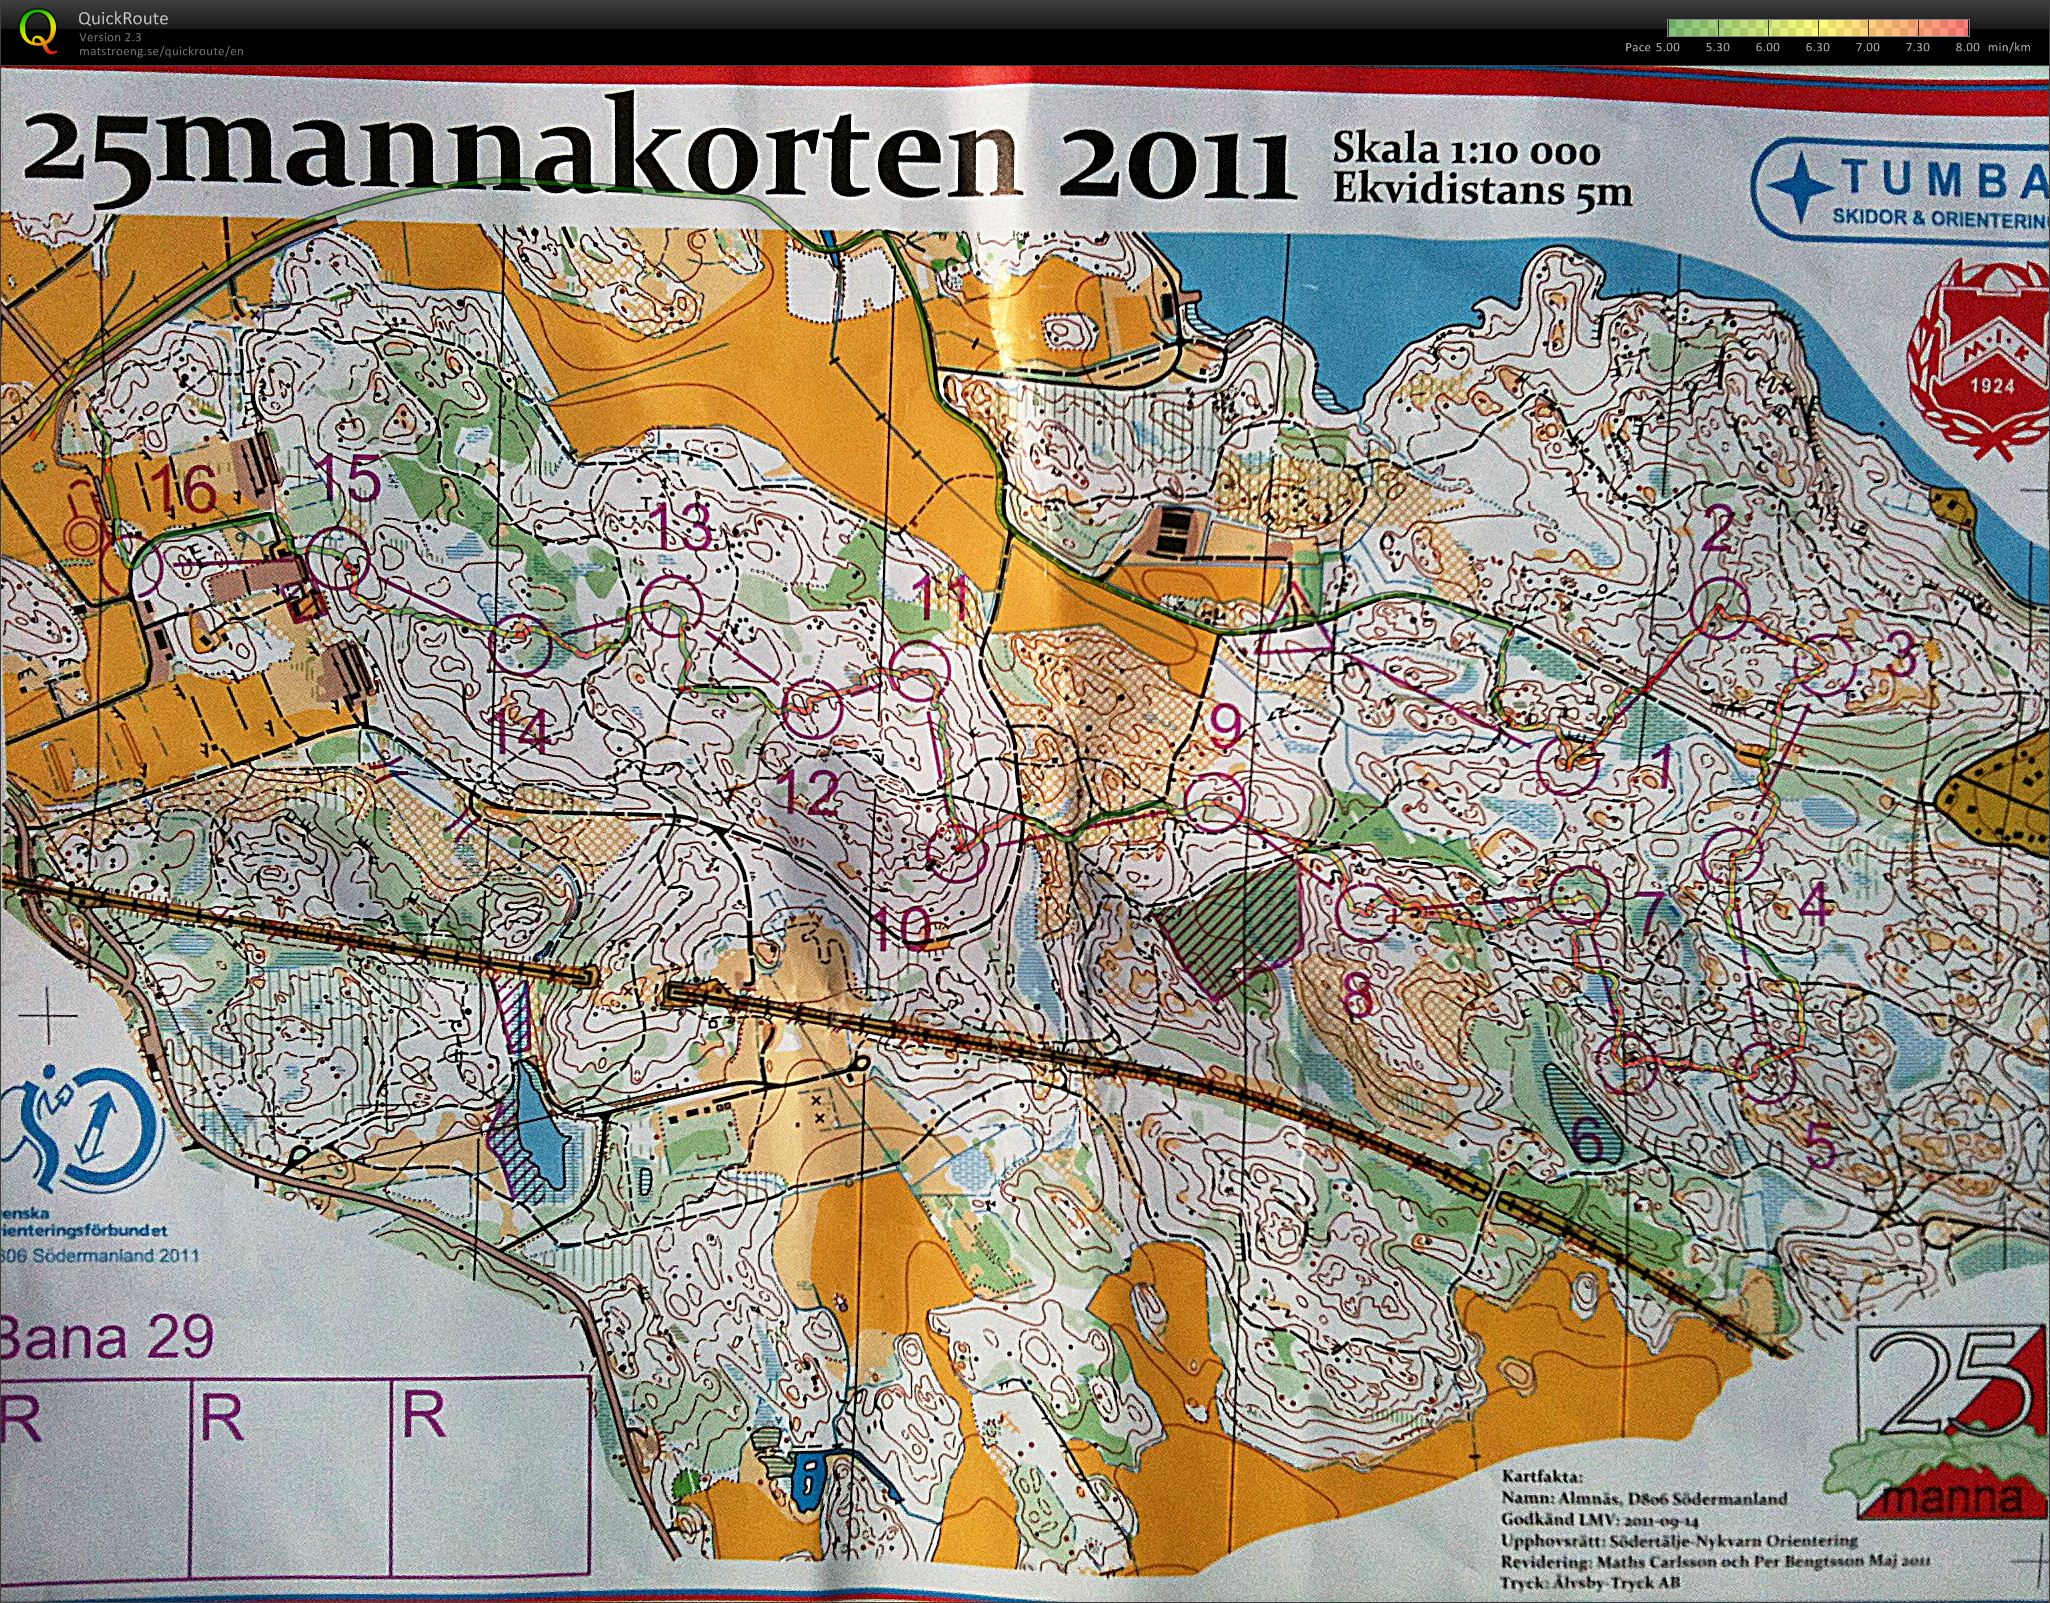 25mannakorten - H45 (09-10-2011)